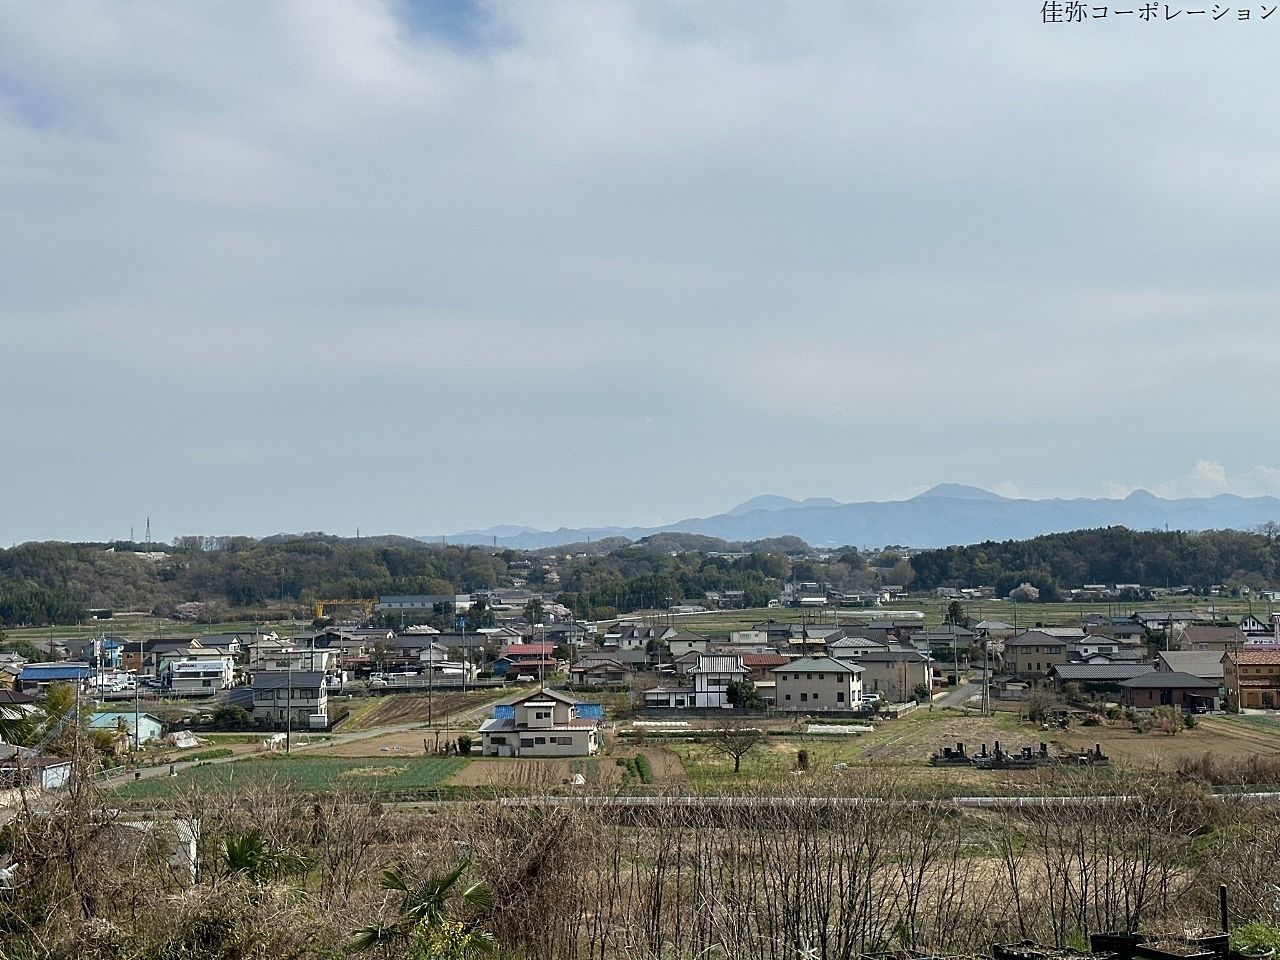 (完売)「松井田町新堀」で3000坪の農地のお引渡しが完了しました